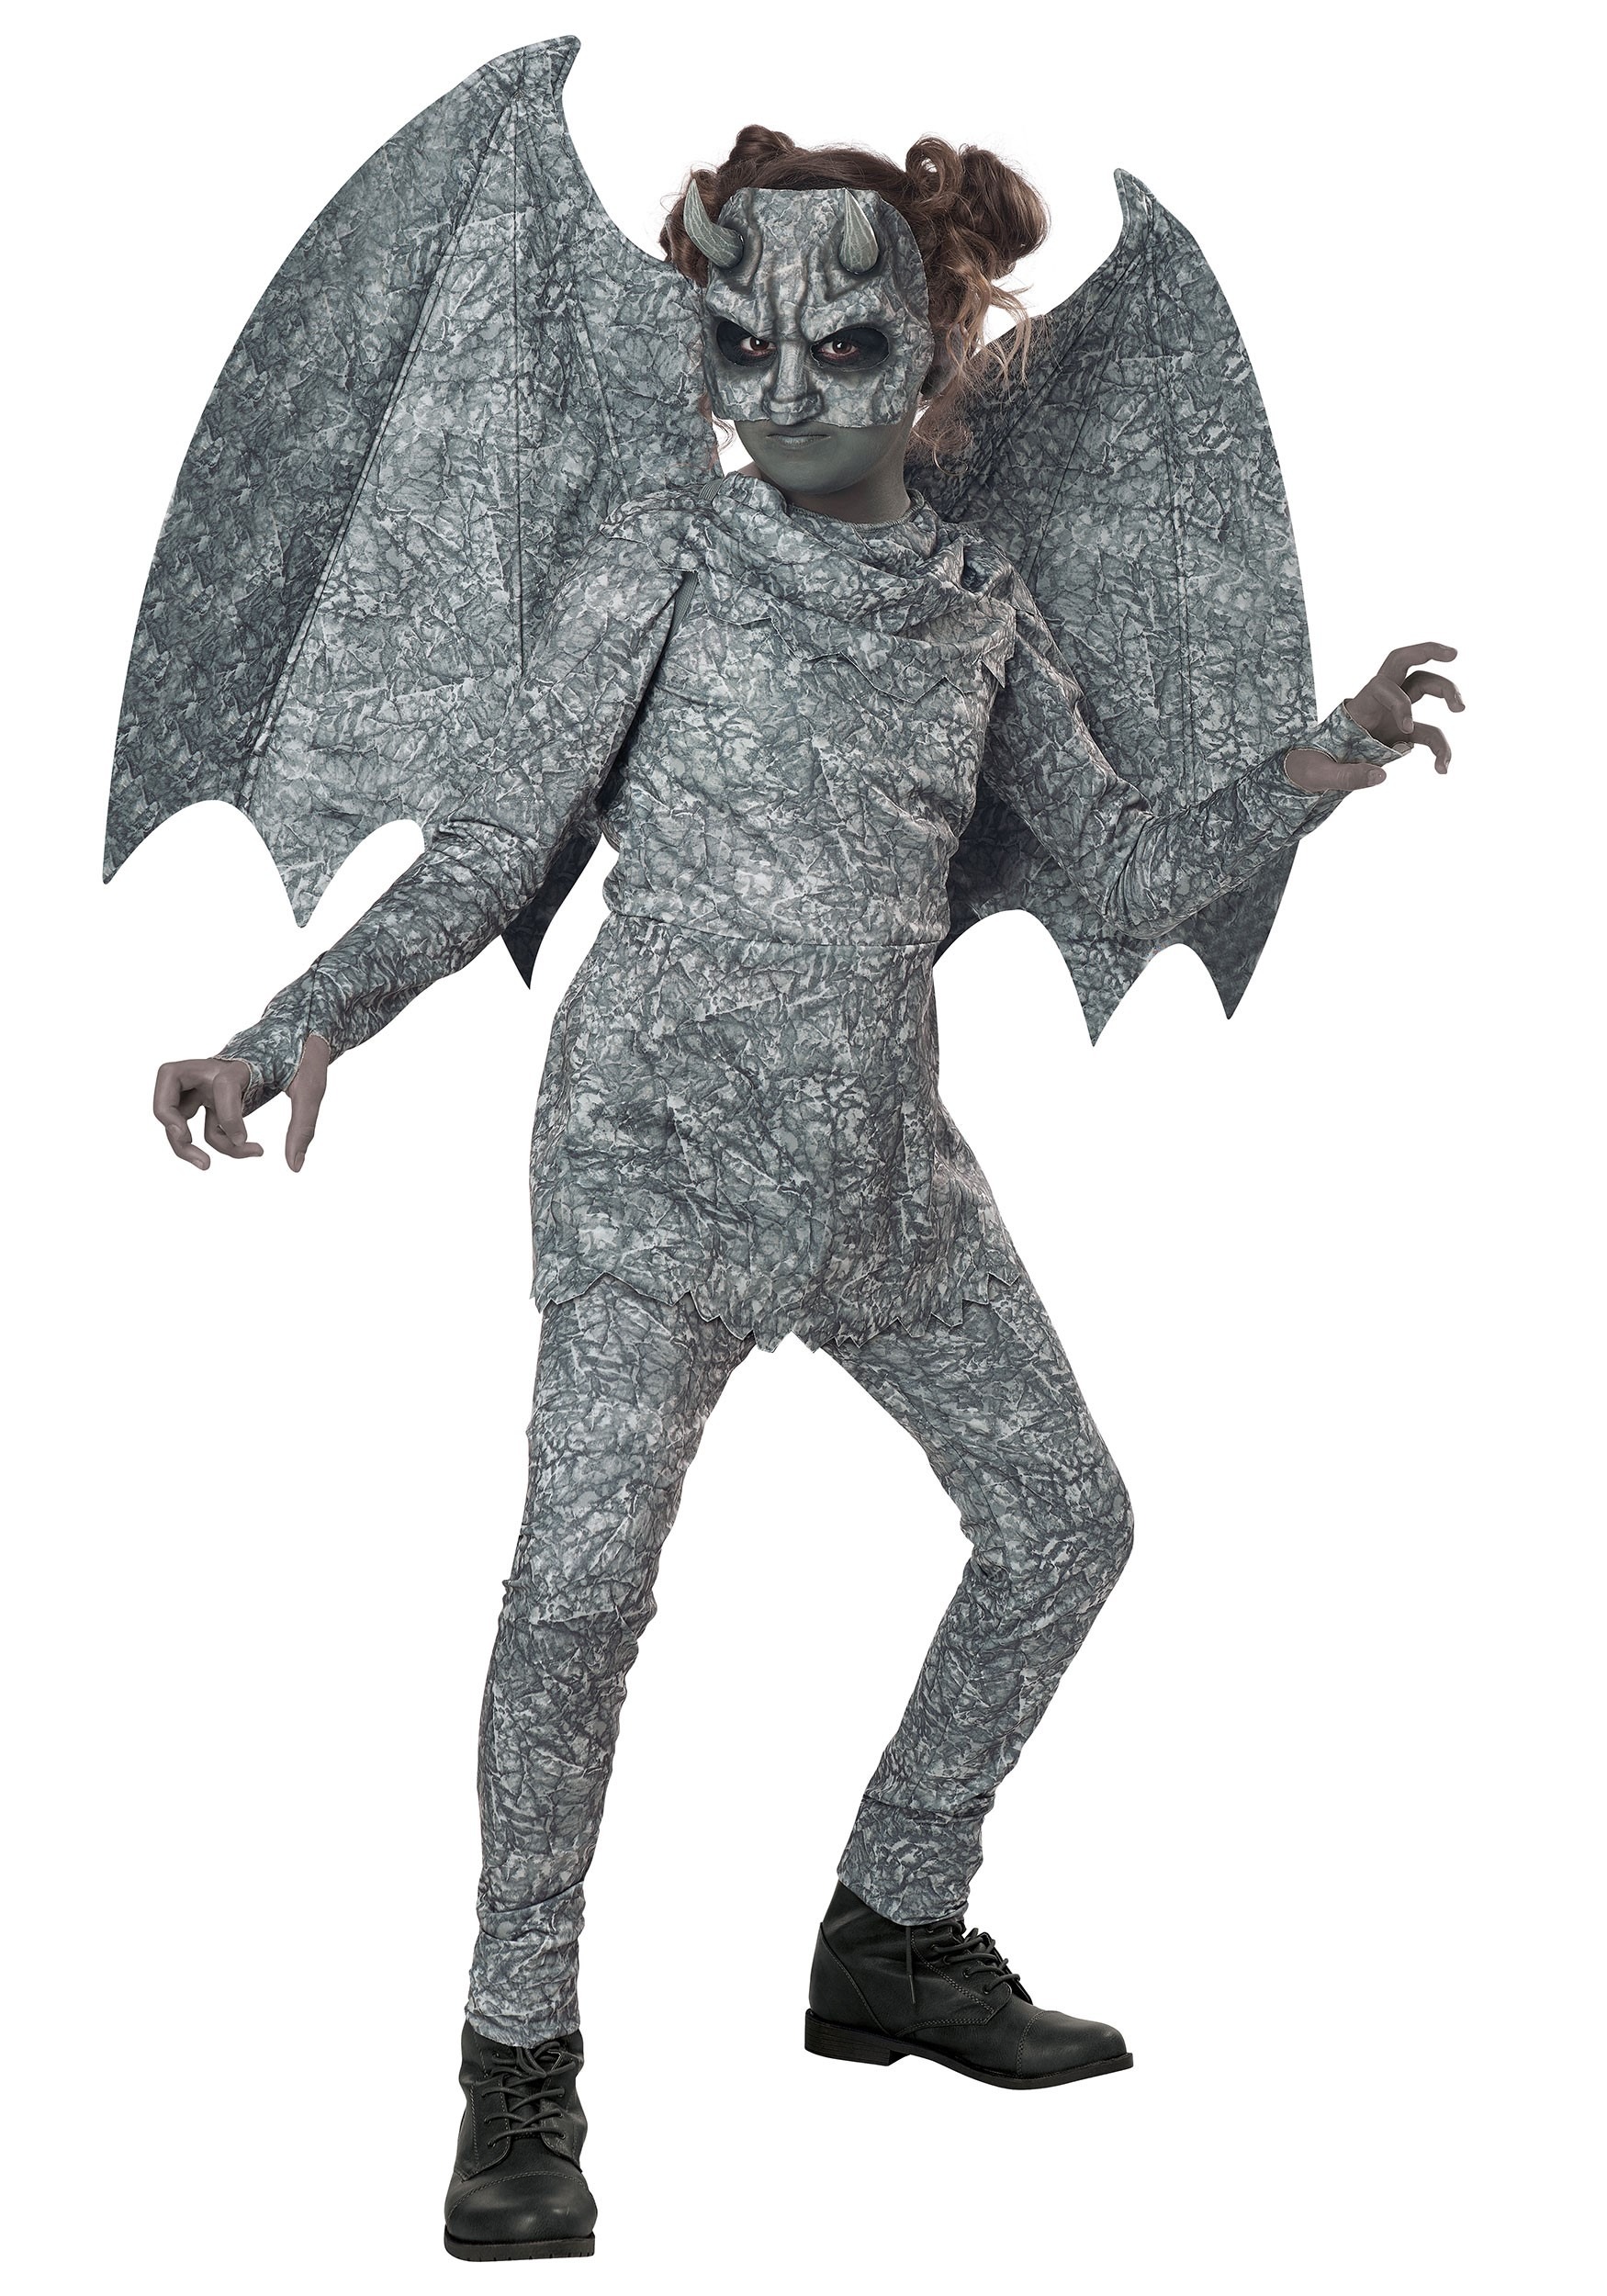 Gargoyle Costume For Girls